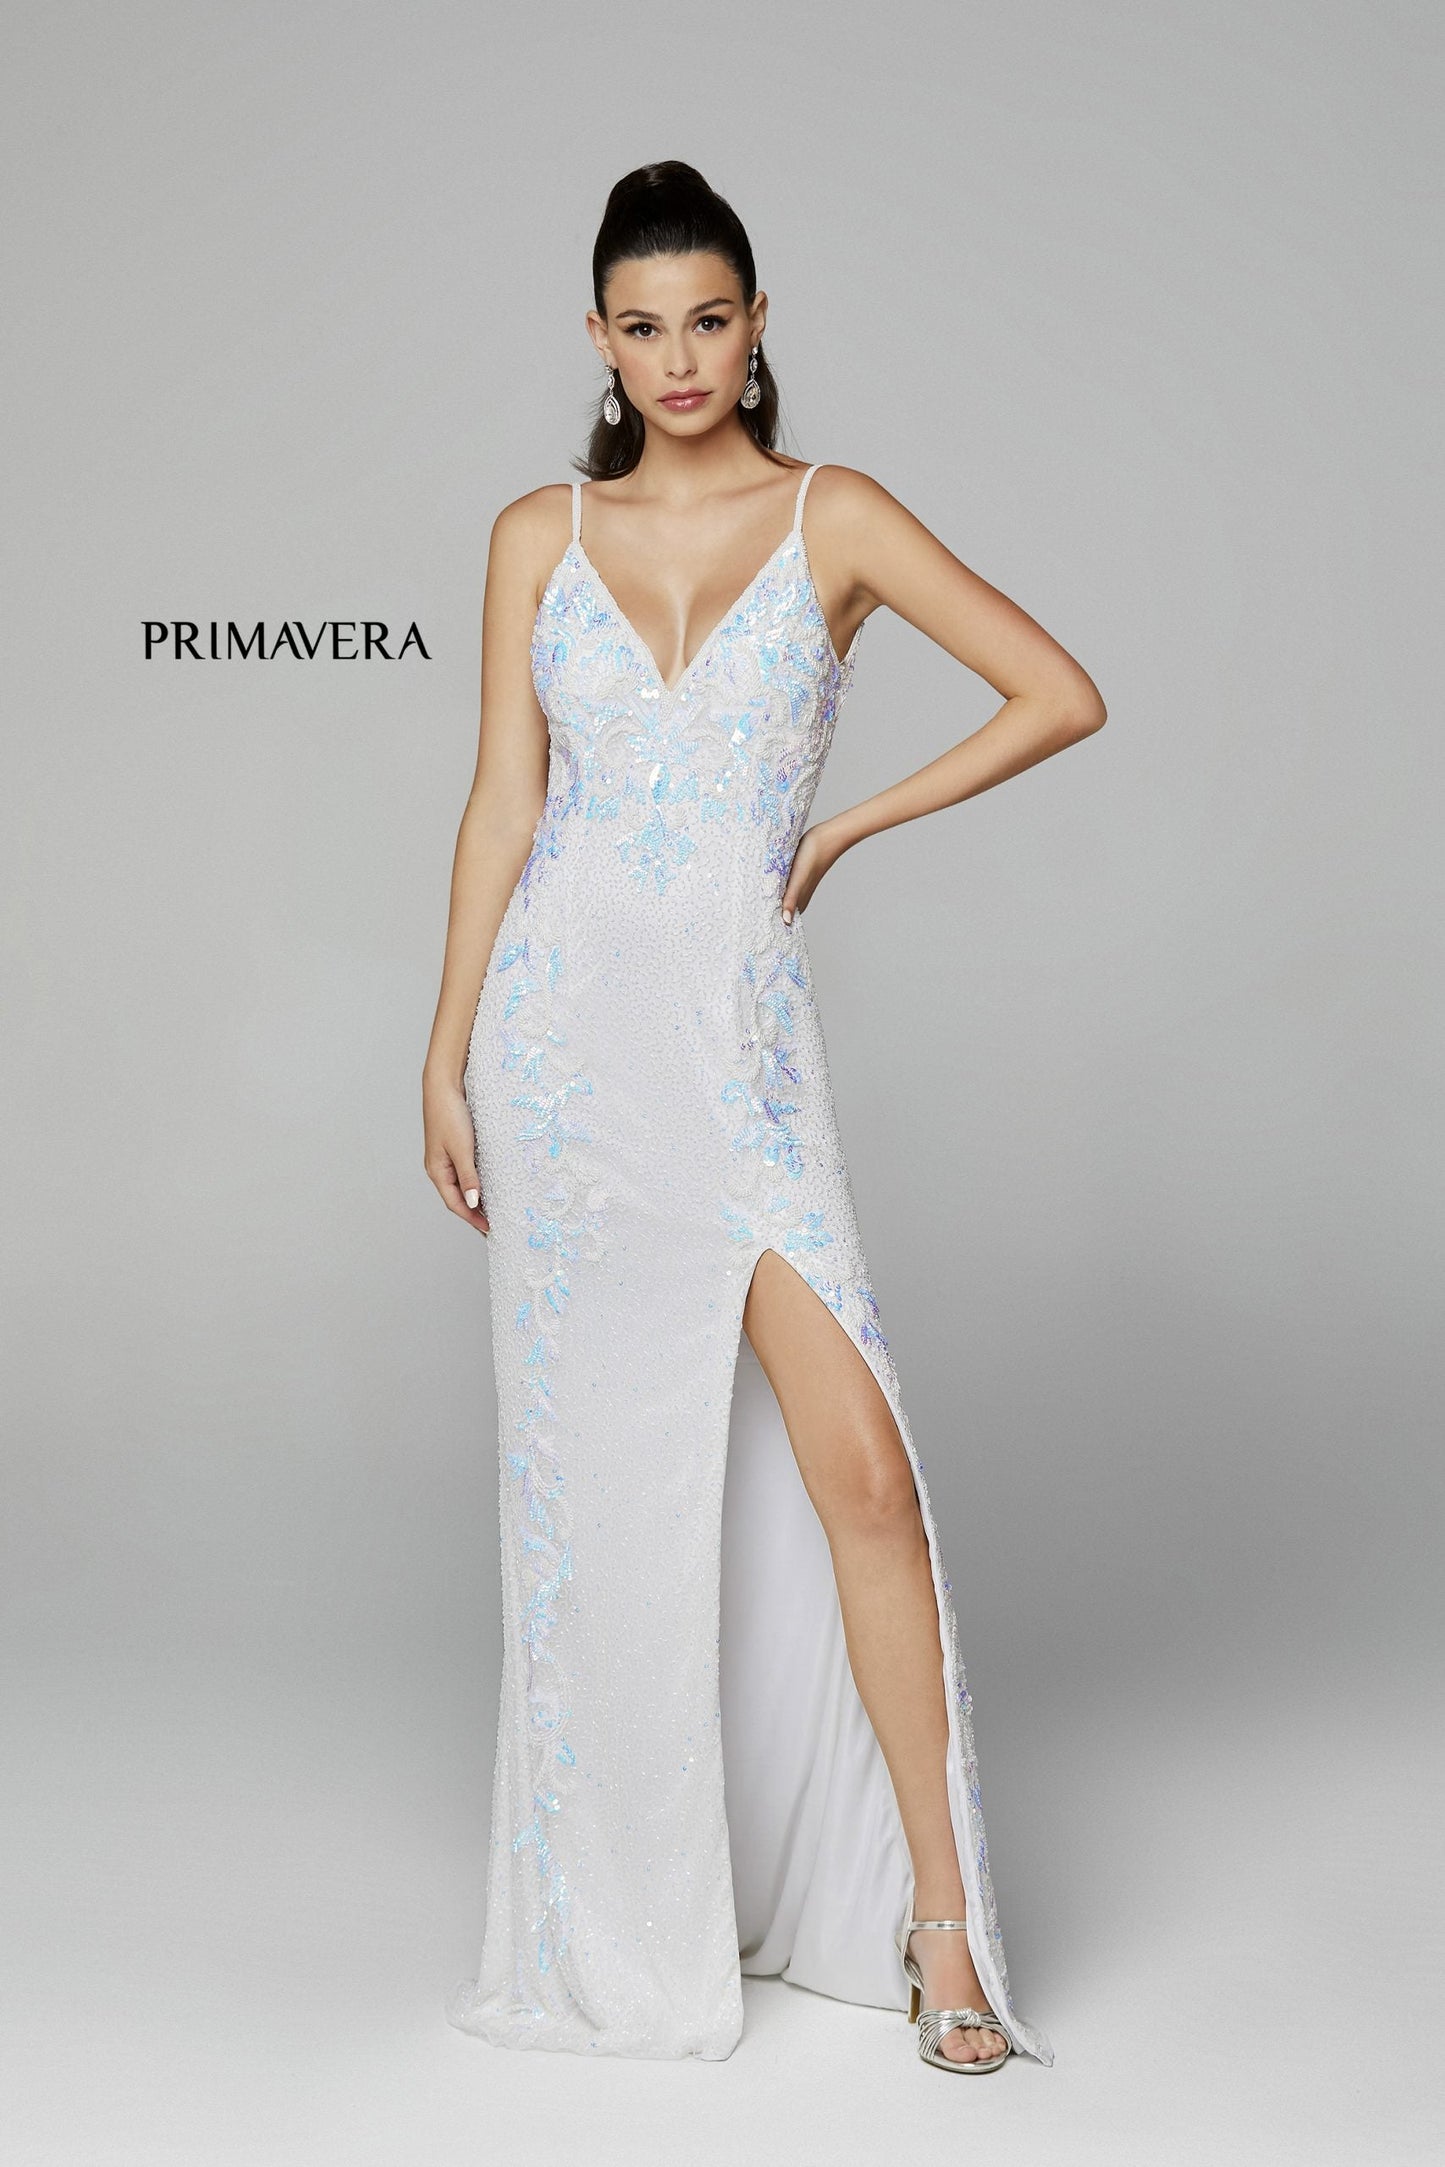 Primavera Couture 3727 Size 22 Prom Dress Beaded Floral Details V Neckline Backless Slit